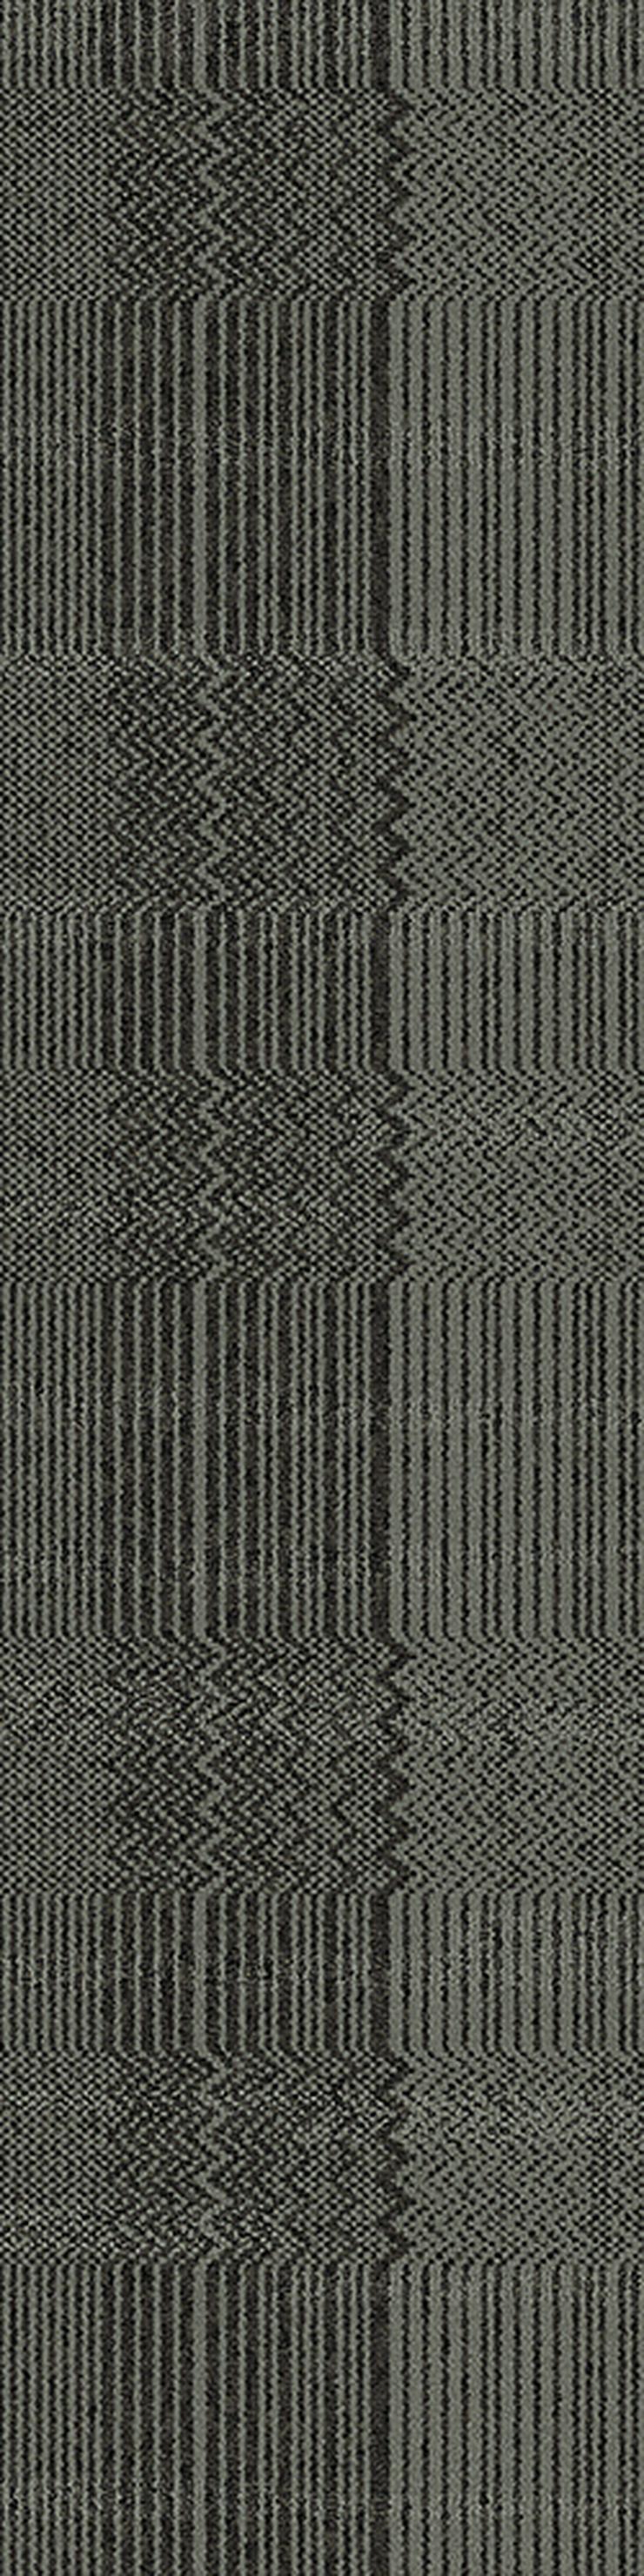 Graue Teppichfliesen, NEU im Karton, moderne Optik - Teppiche - Bild 3